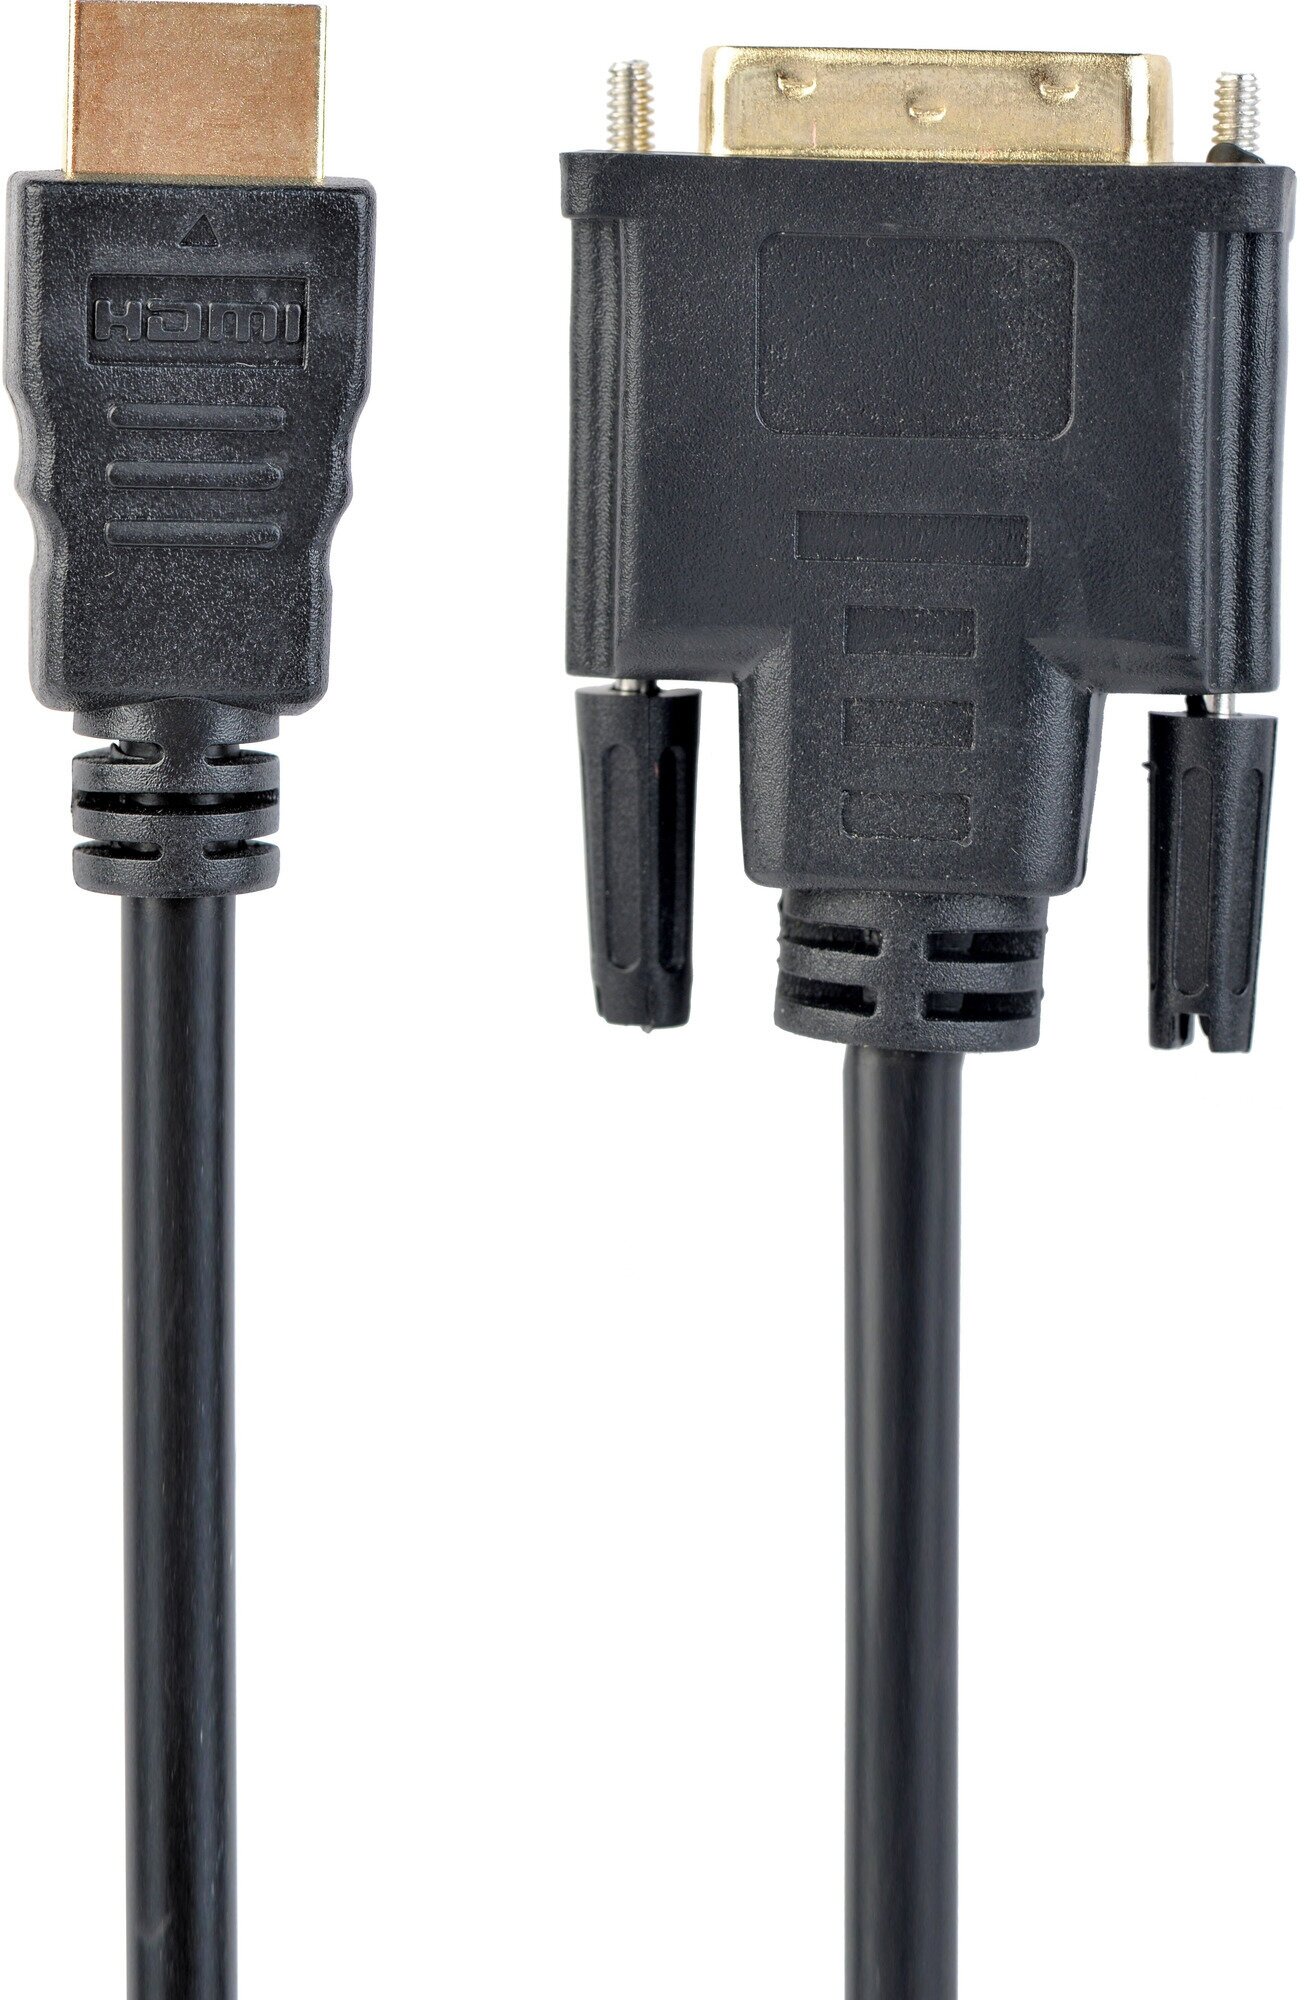 Кабель HDMI-DVI Cablexpert CC-HDMI-DVI-10, single link, 19M/19M, 3 м, позолоченный разъем, экран, черный